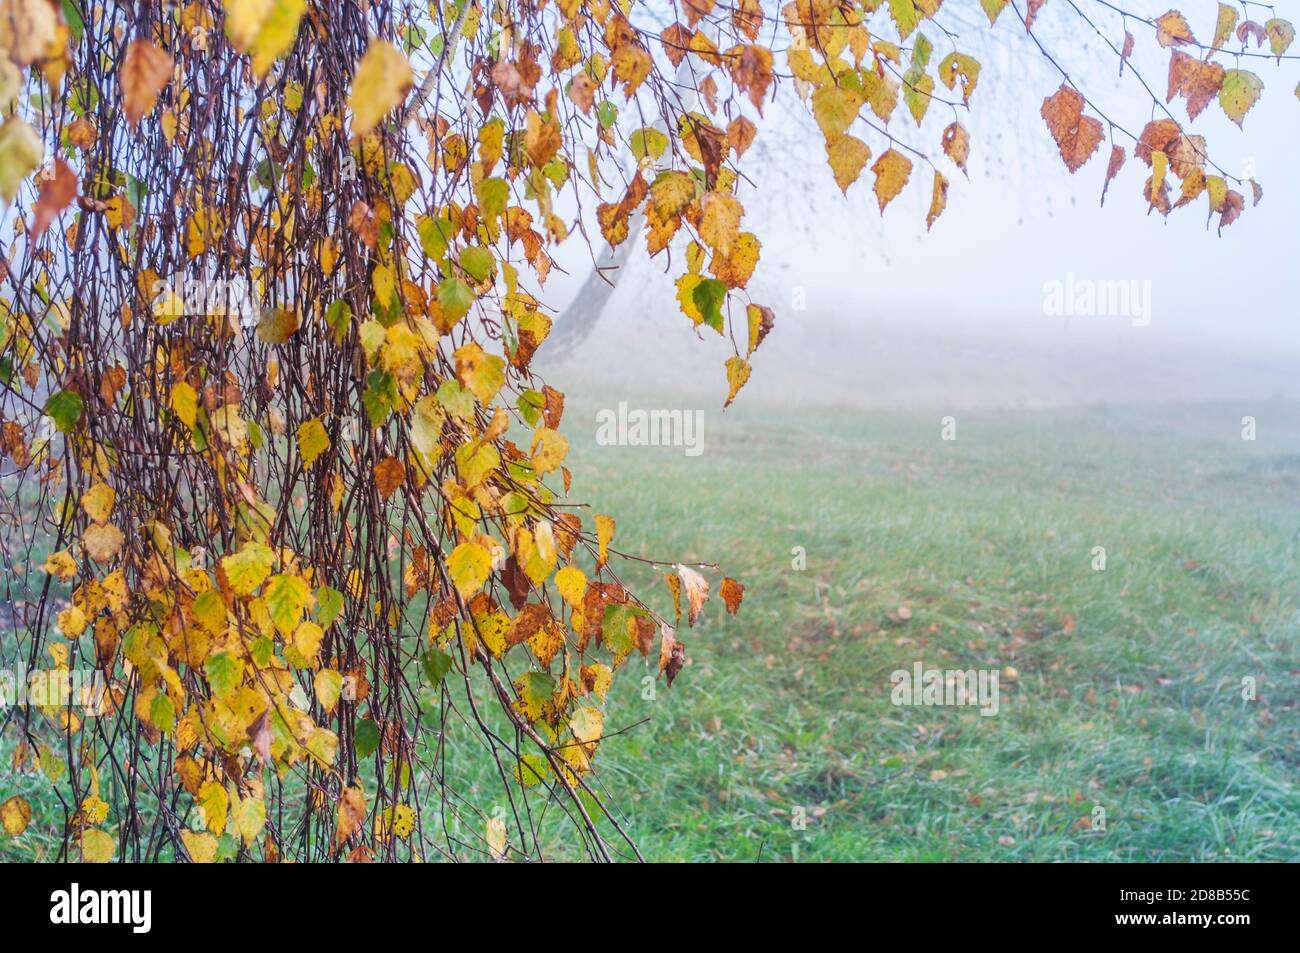 Rami di betulla con foglie d'autunno colorate e gocce di rugiada su uno sfondo tuvan sfocato. Colori autunnali, messa a fuoco selettiva Foto Stock